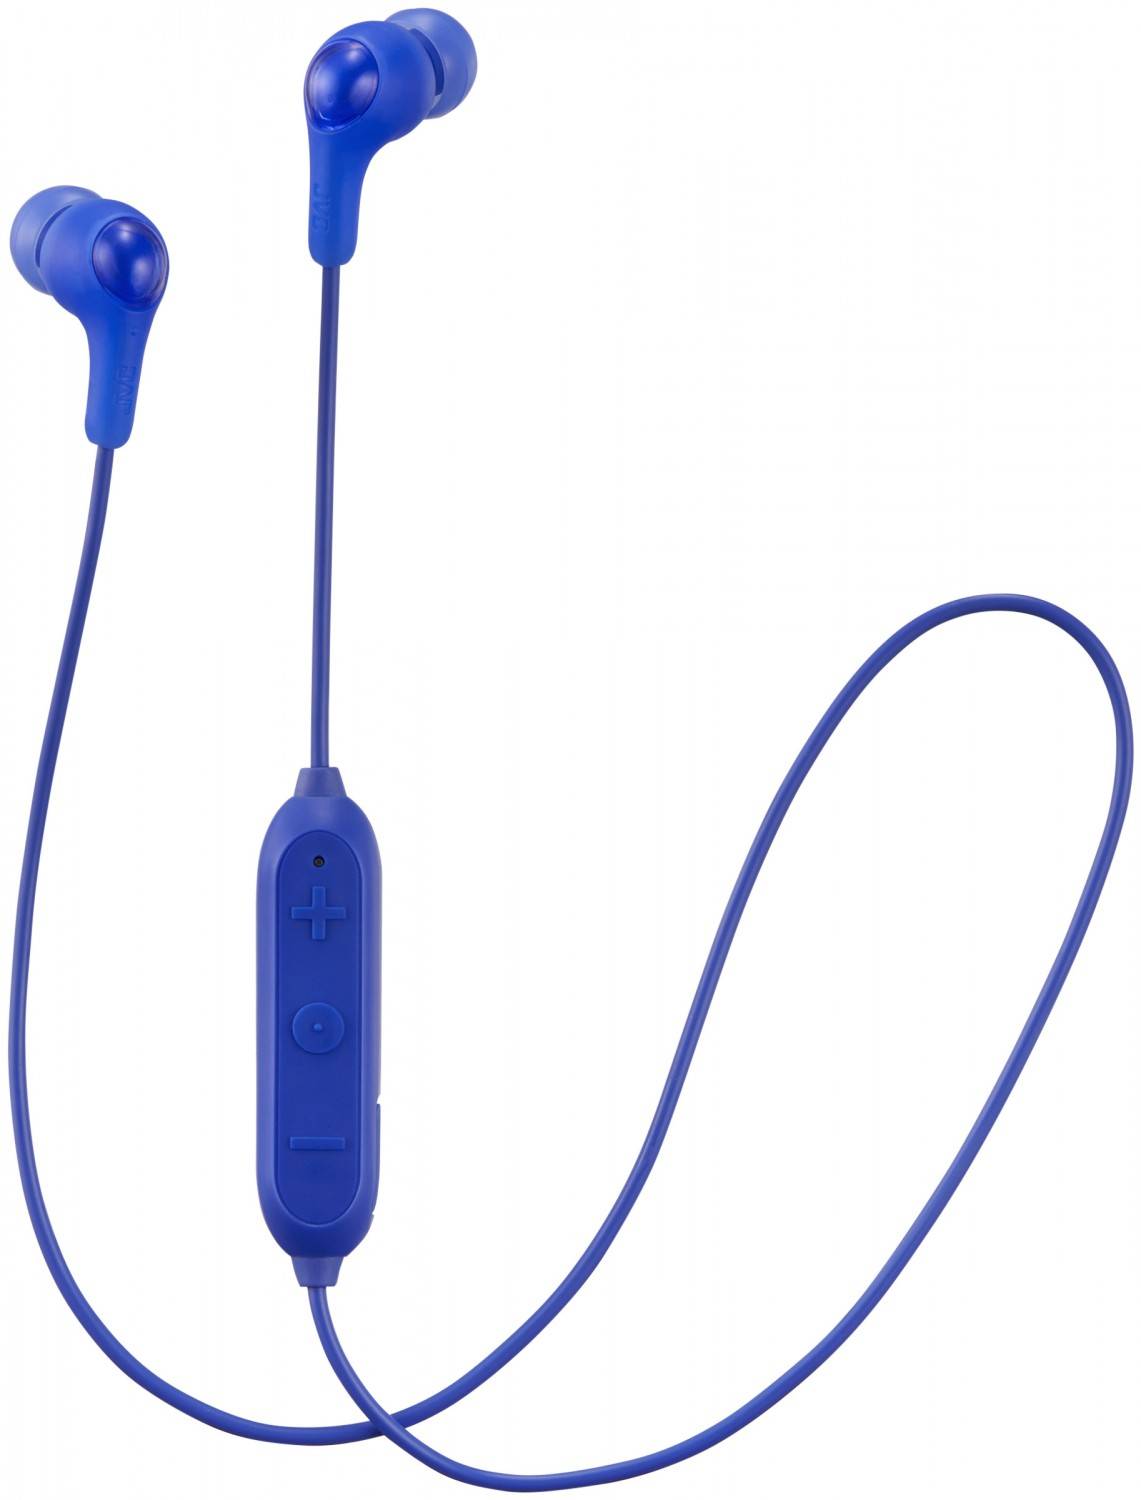 HiFi Für Einsteiger: Bluetooth-Kopfhörer von JVC - Bedienung über 3-Tasten-Fernbedienung - News, Bild 2